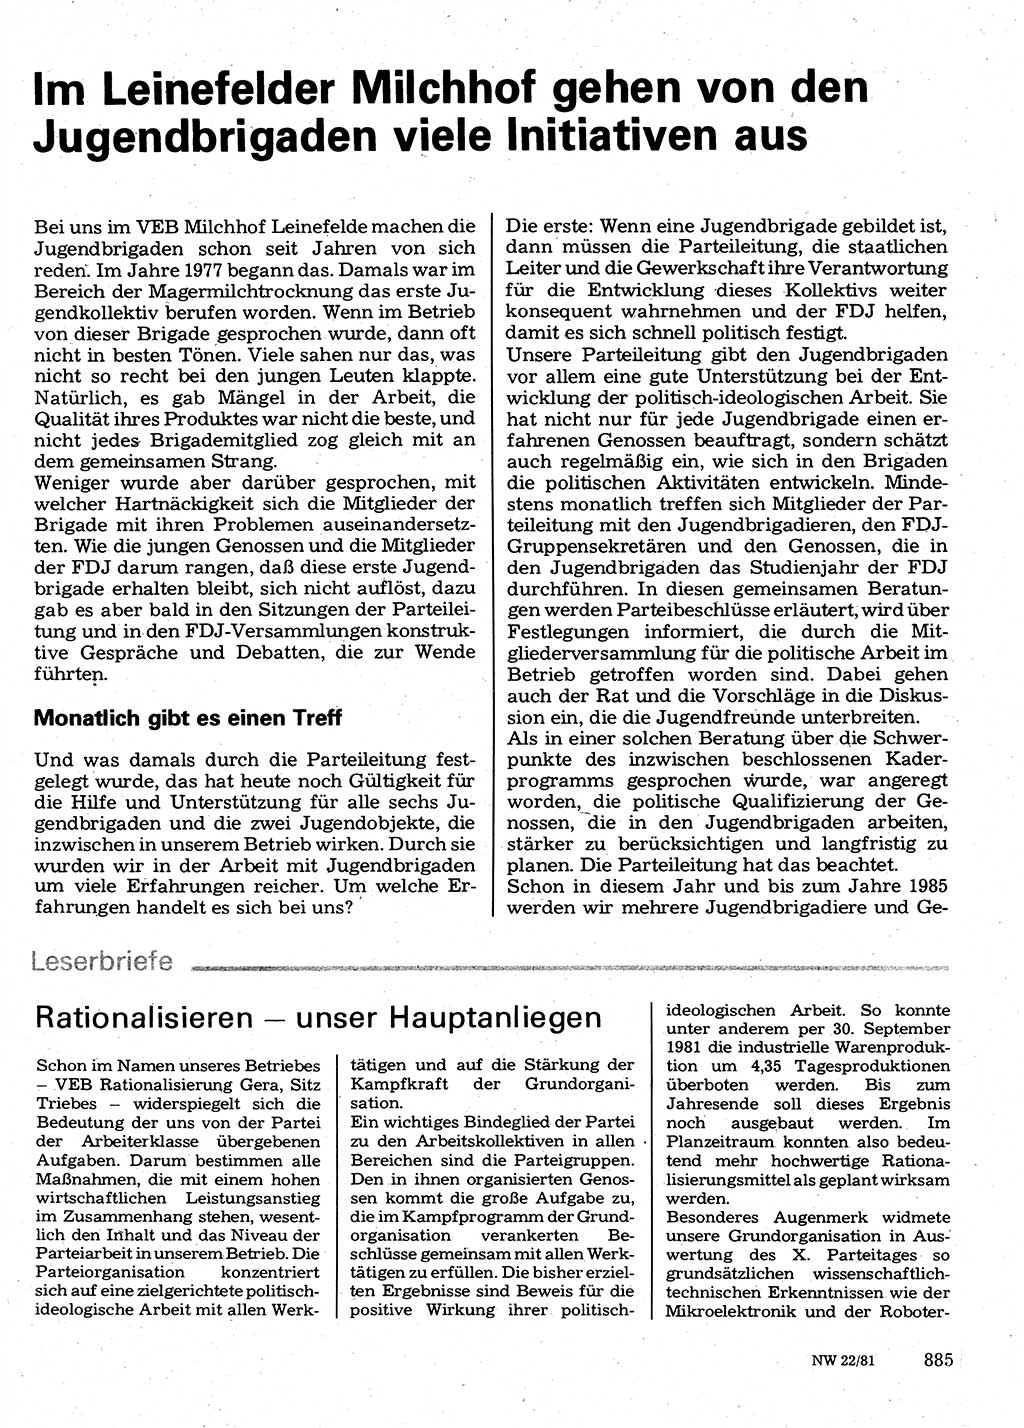 Neuer Weg (NW), Organ des Zentralkomitees (ZK) der SED (Sozialistische Einheitspartei Deutschlands) für Fragen des Parteilebens, 36. Jahrgang [Deutsche Demokratische Republik (DDR)] 1981, Seite 885 (NW ZK SED DDR 1981, S. 885)